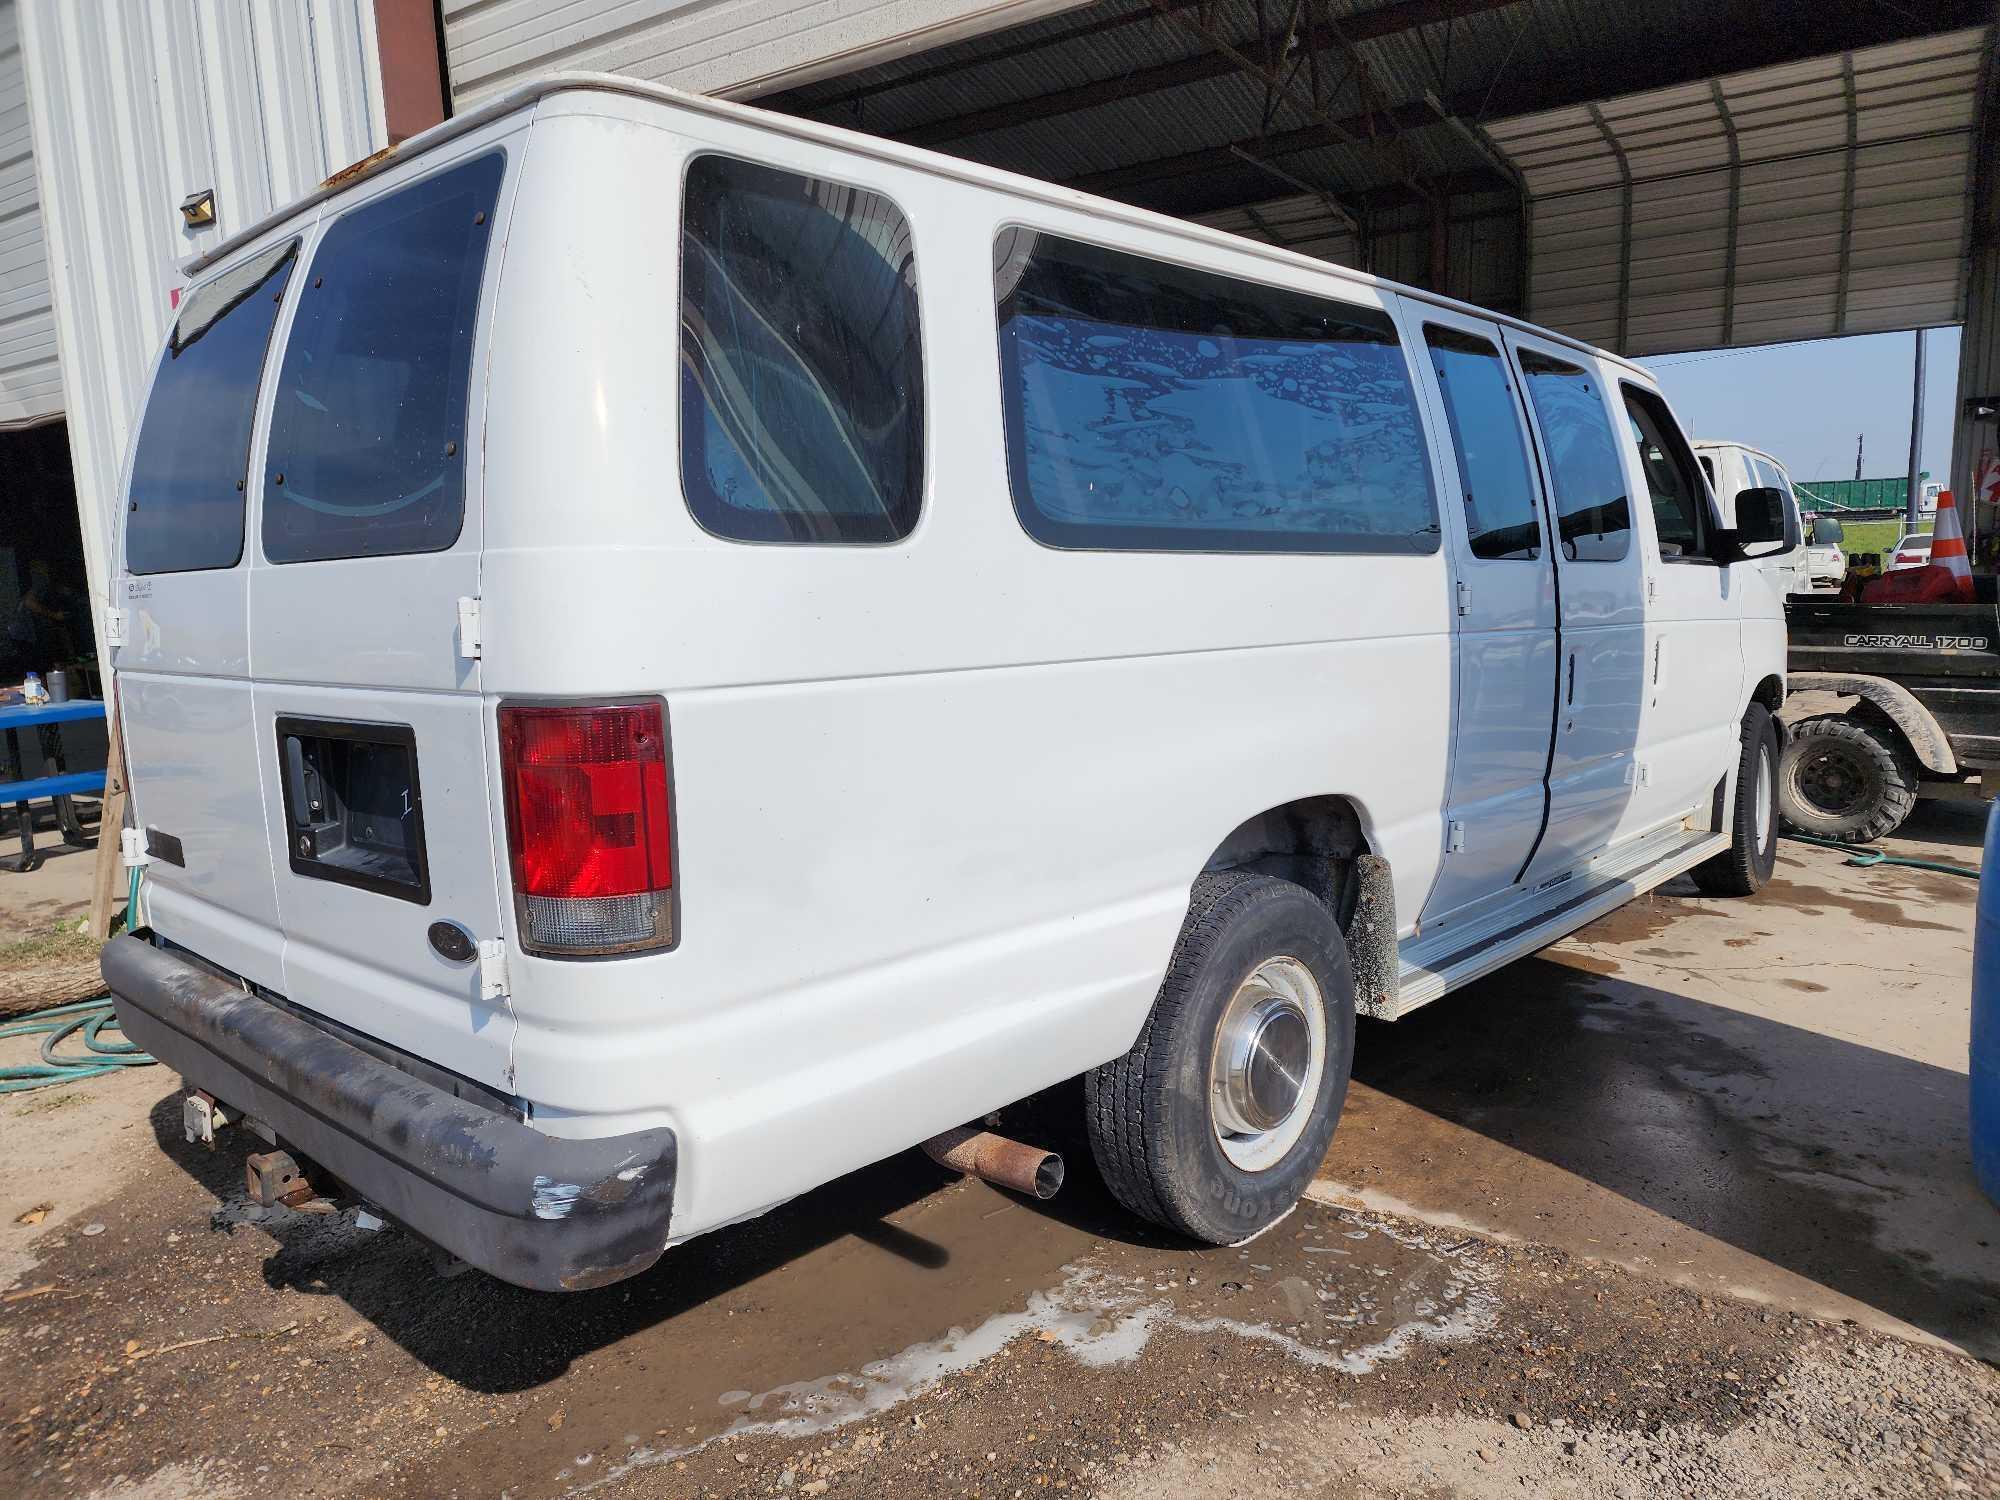 2003 Ford Econoline Wagon Van, VIN # 1FBSS31L43HA69846